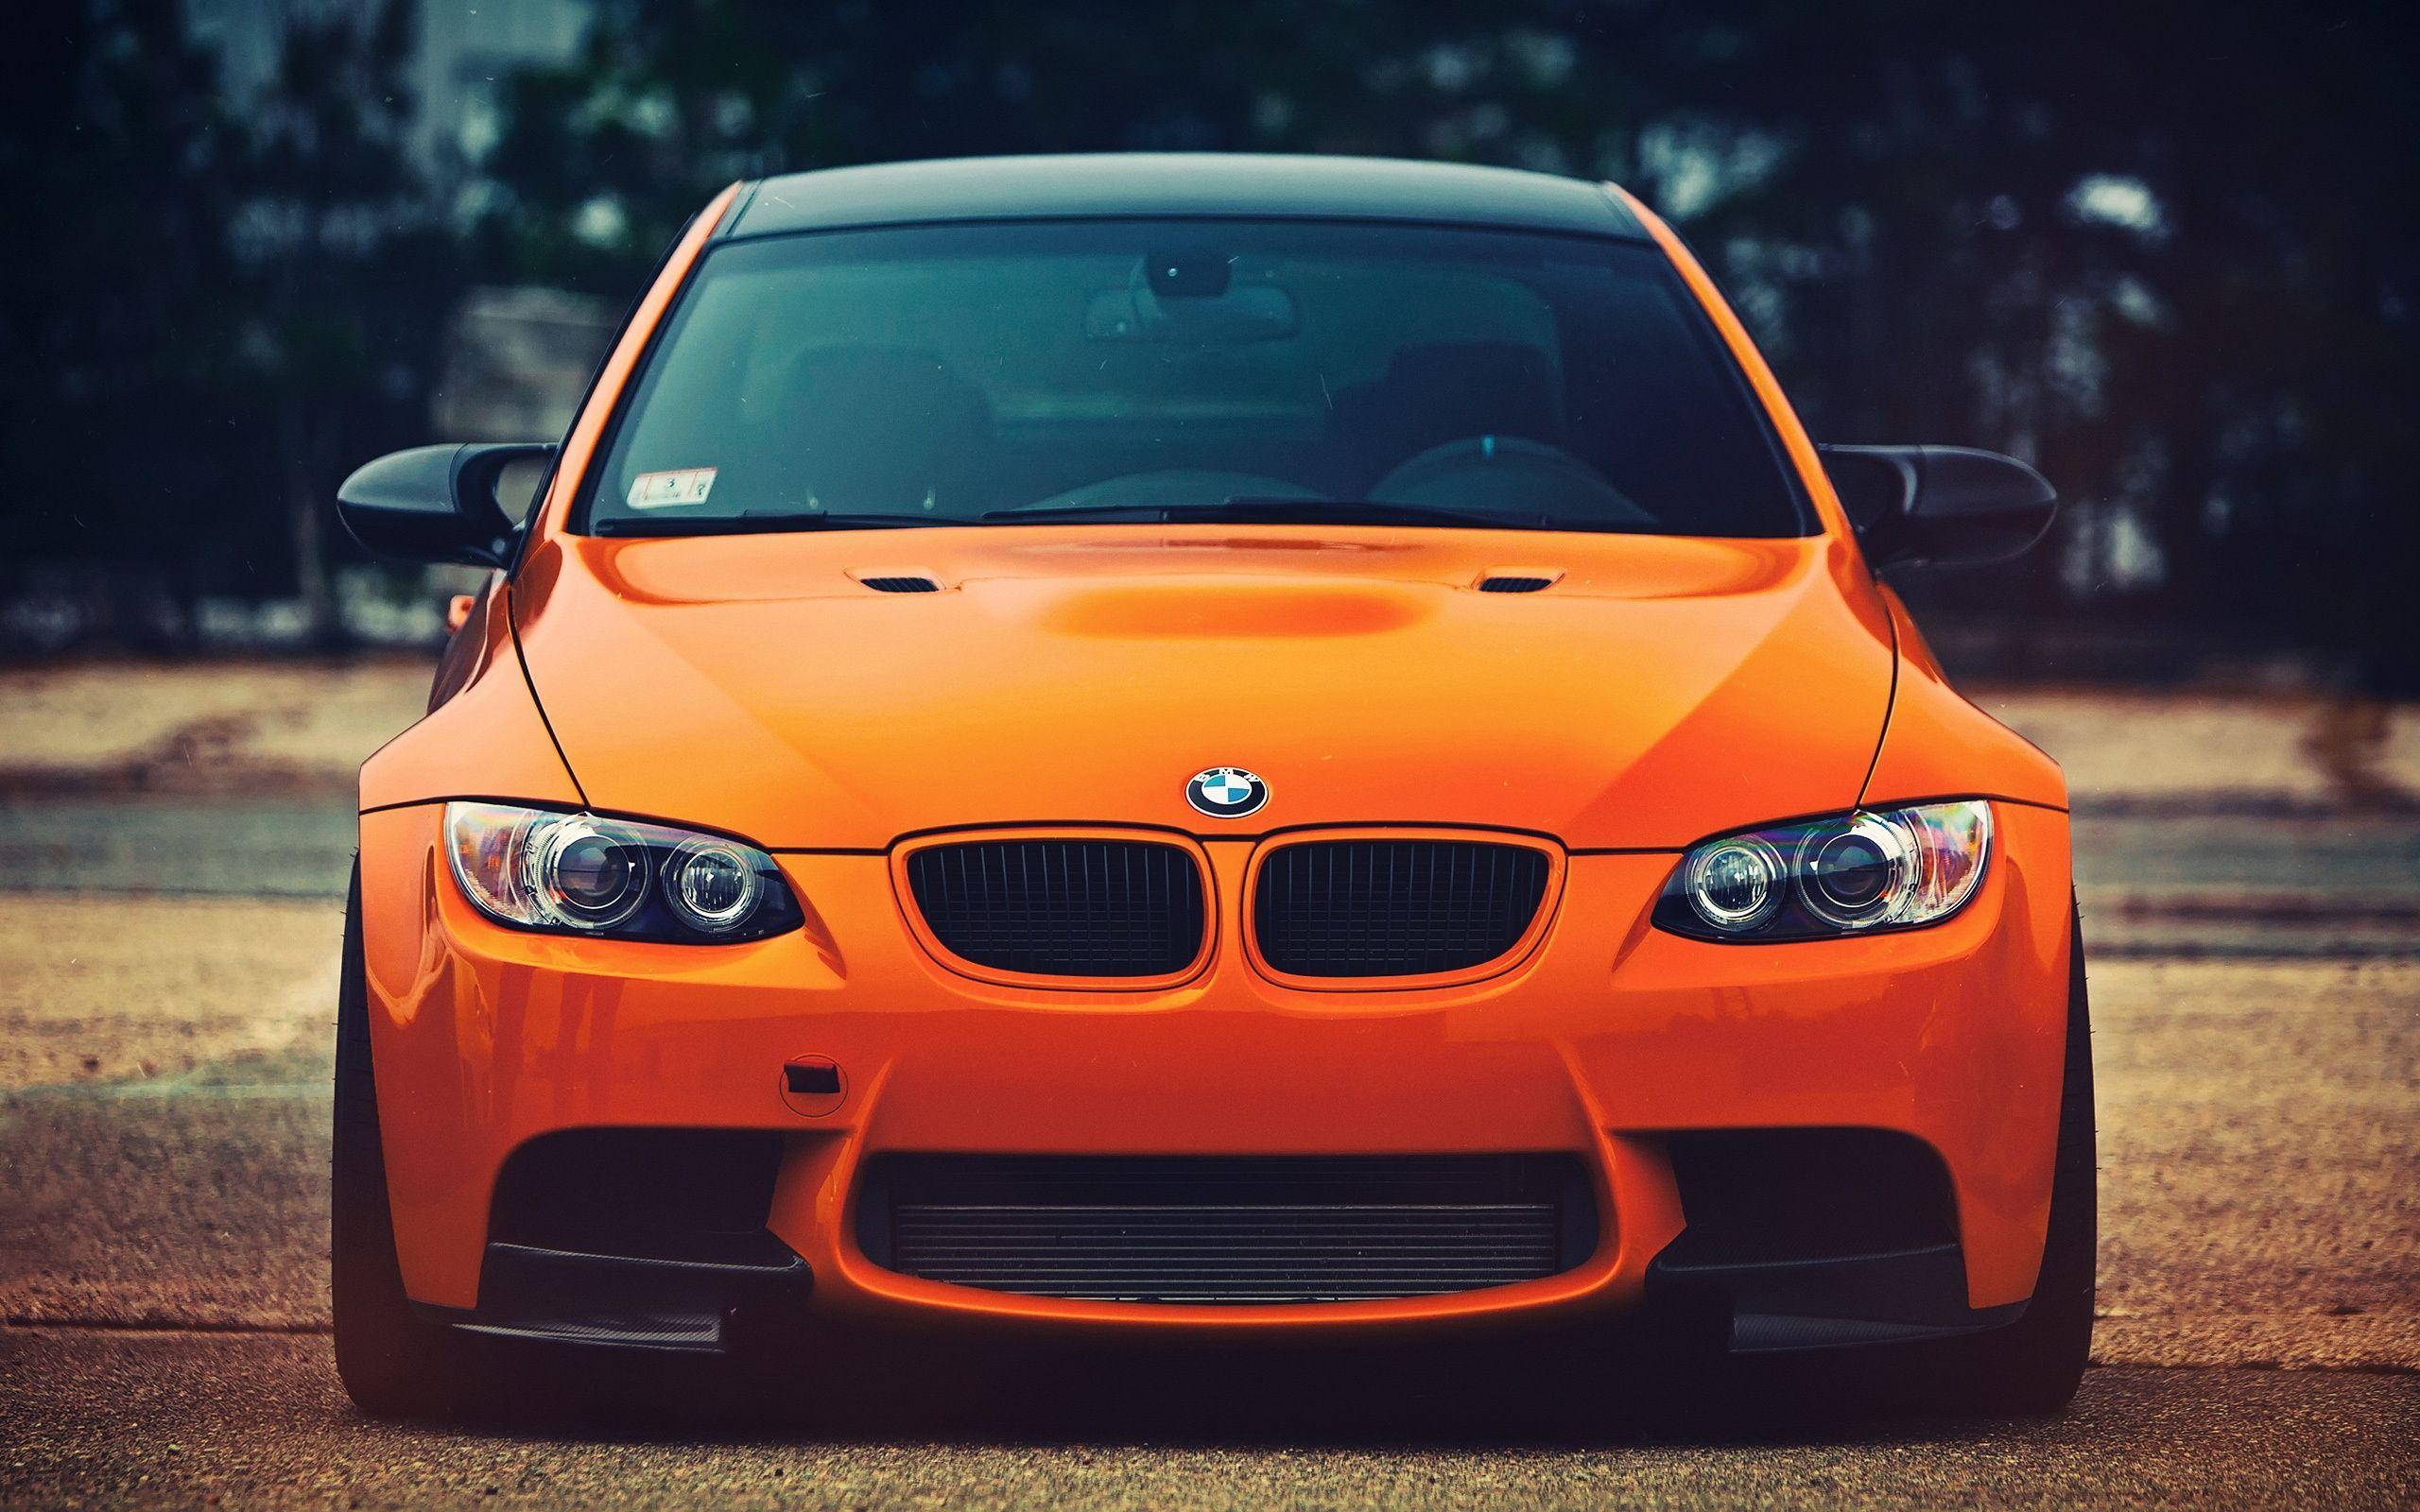 BMW M3 orange car front view Wallpaper. HD Desktop Wallpaper